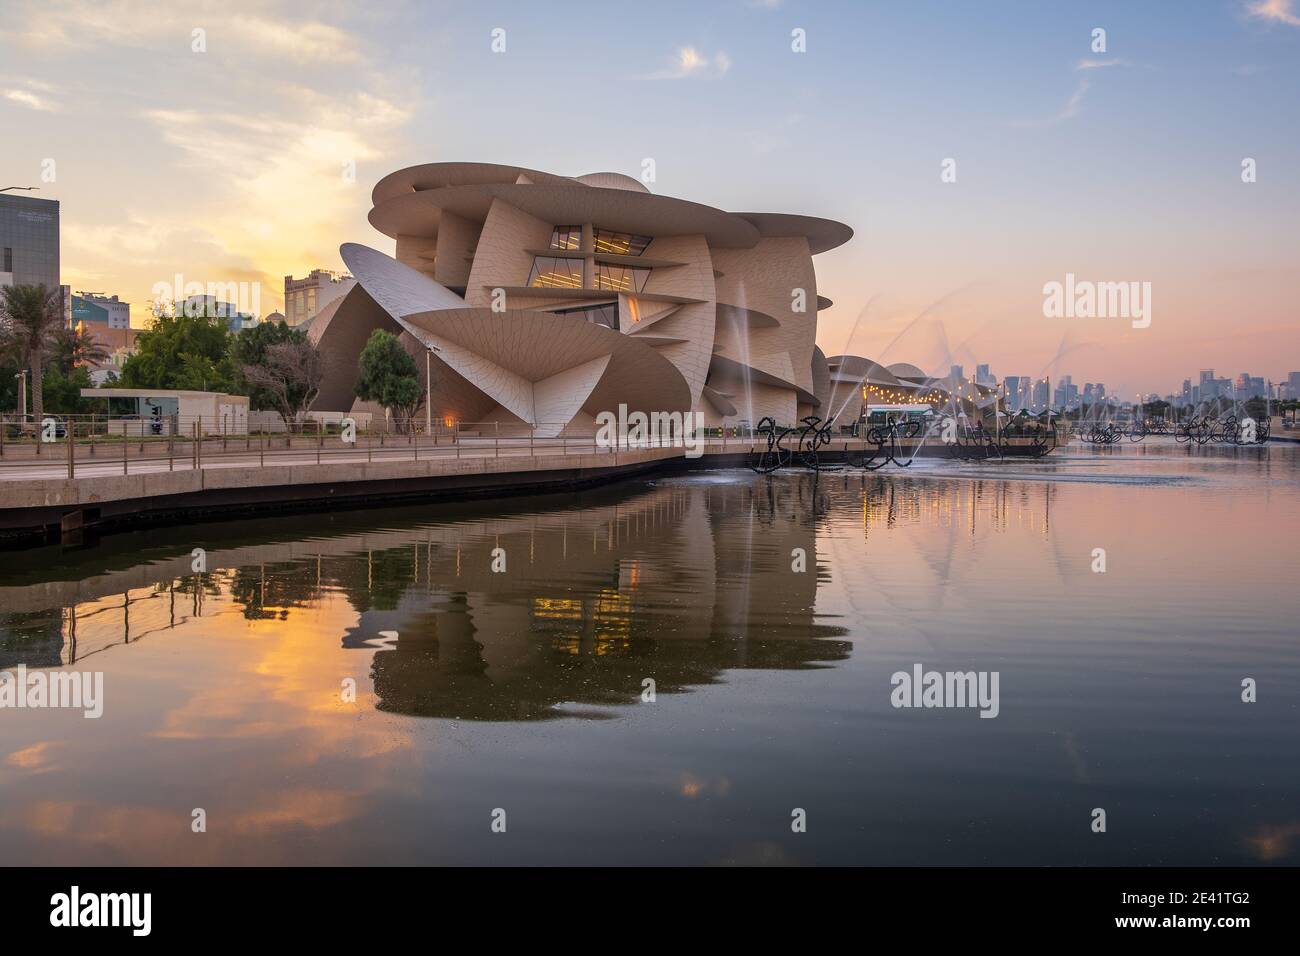 Schöne Aussicht auf Katar National Museum während des Sonnenuntergangs Stockfoto